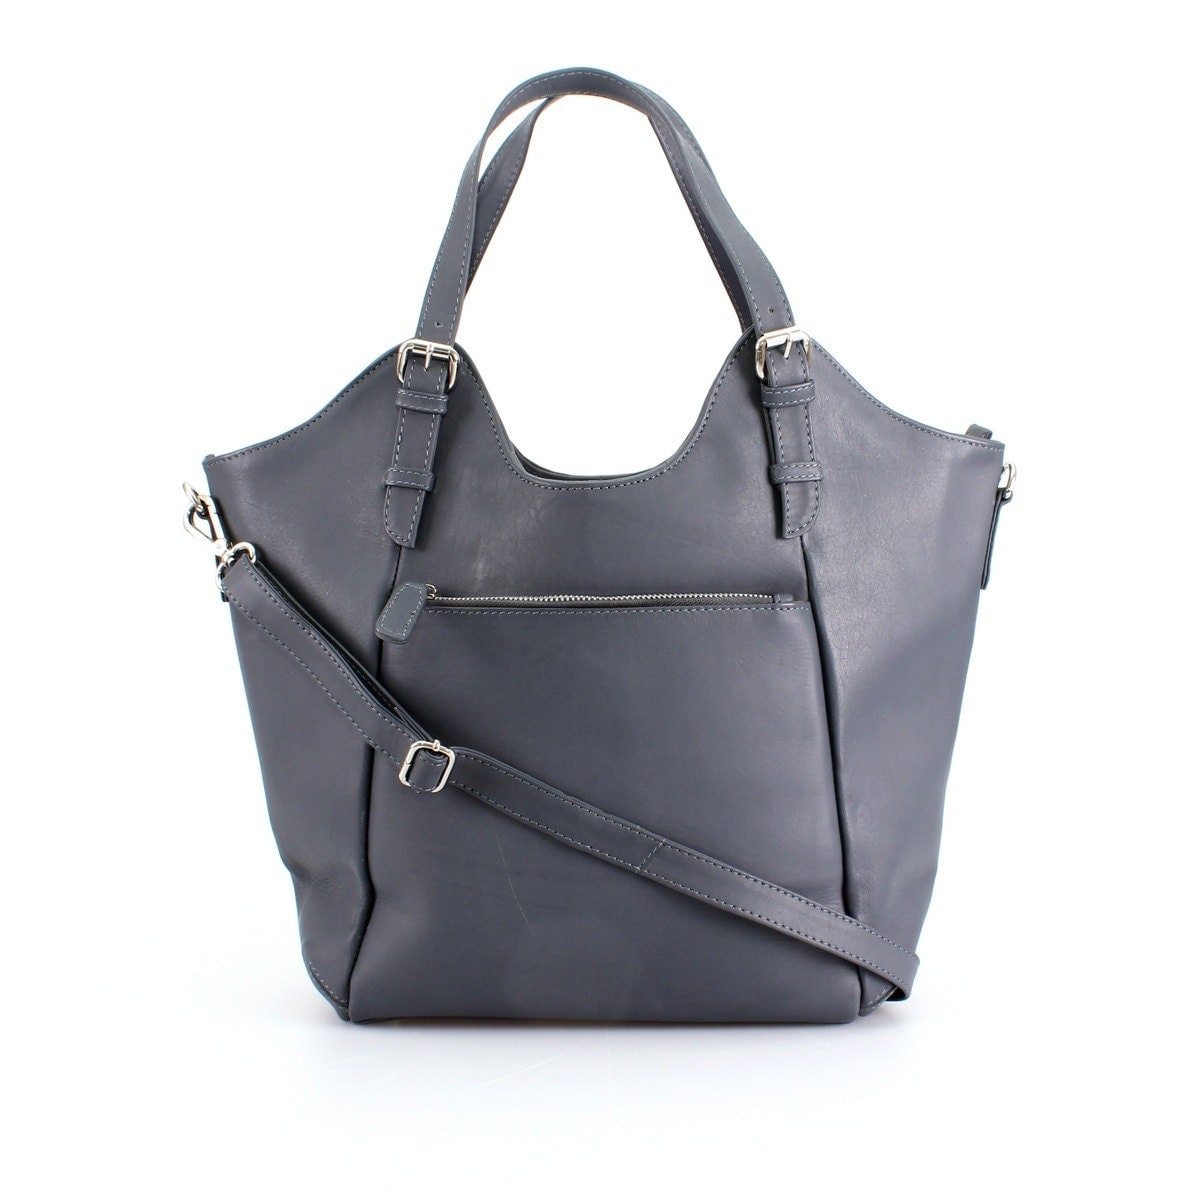 Gray Leather Handbag Bag Purse Tote